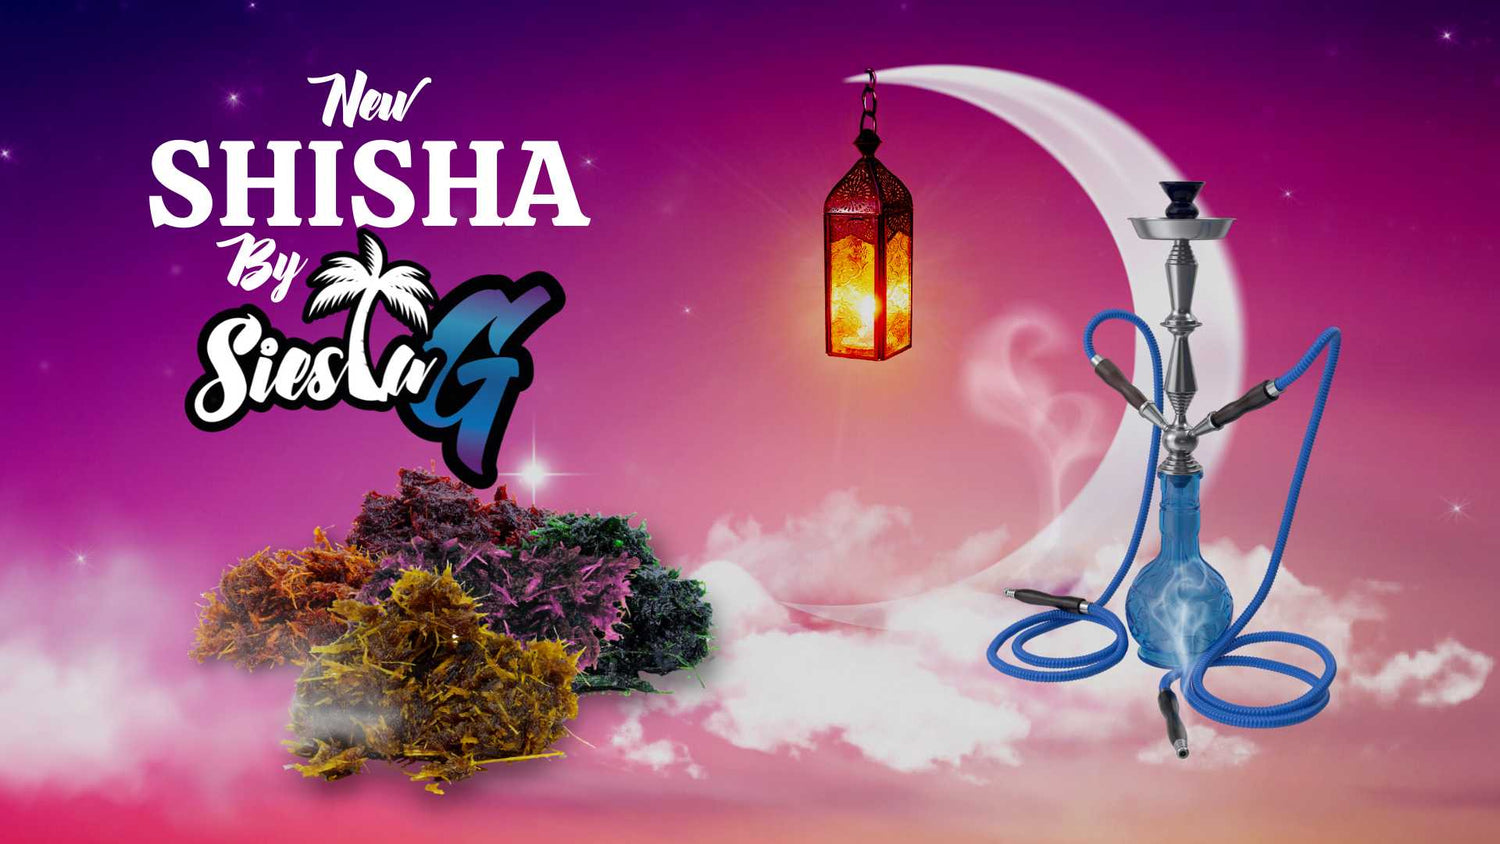 Delta 8 Shisha - The New Way to Enjoy Hookah Siesta-G